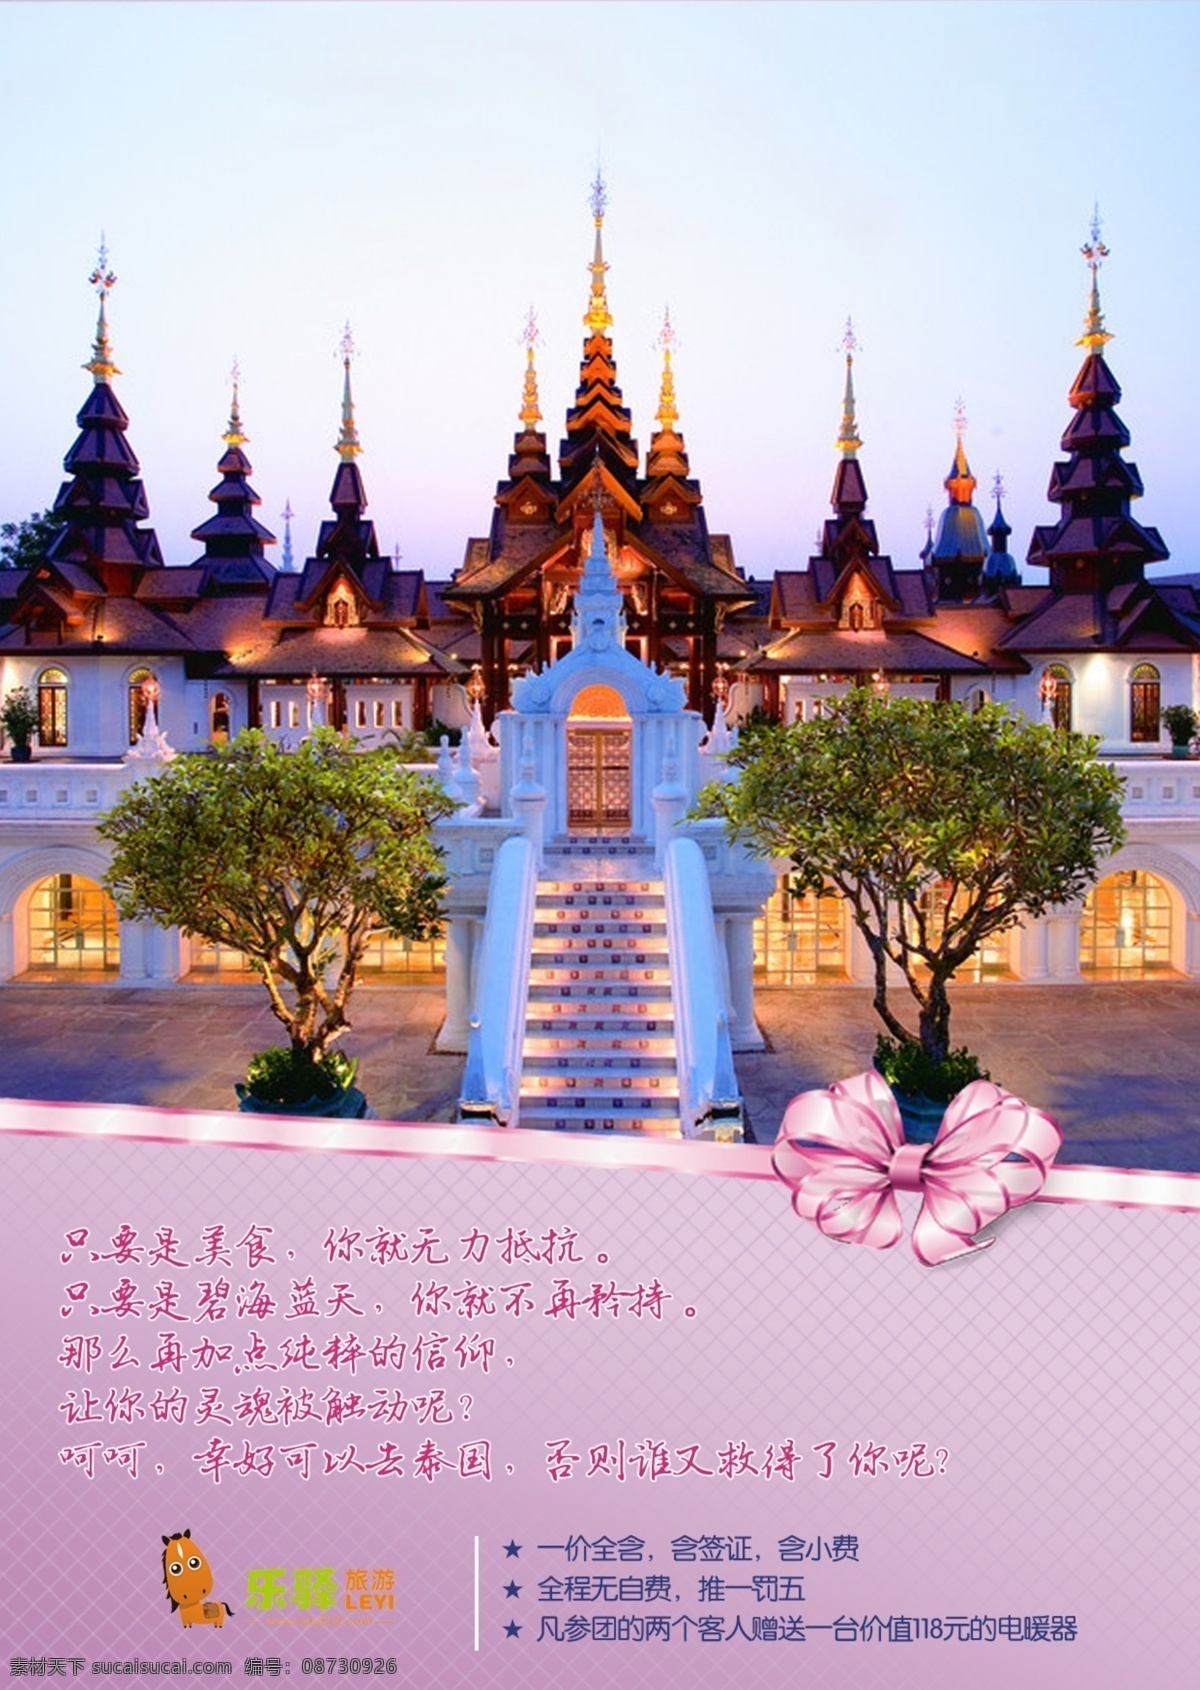 泰国 旅游 dm 单 旅行社 泰国旅游 泰国dm单 原创设计 原创海报